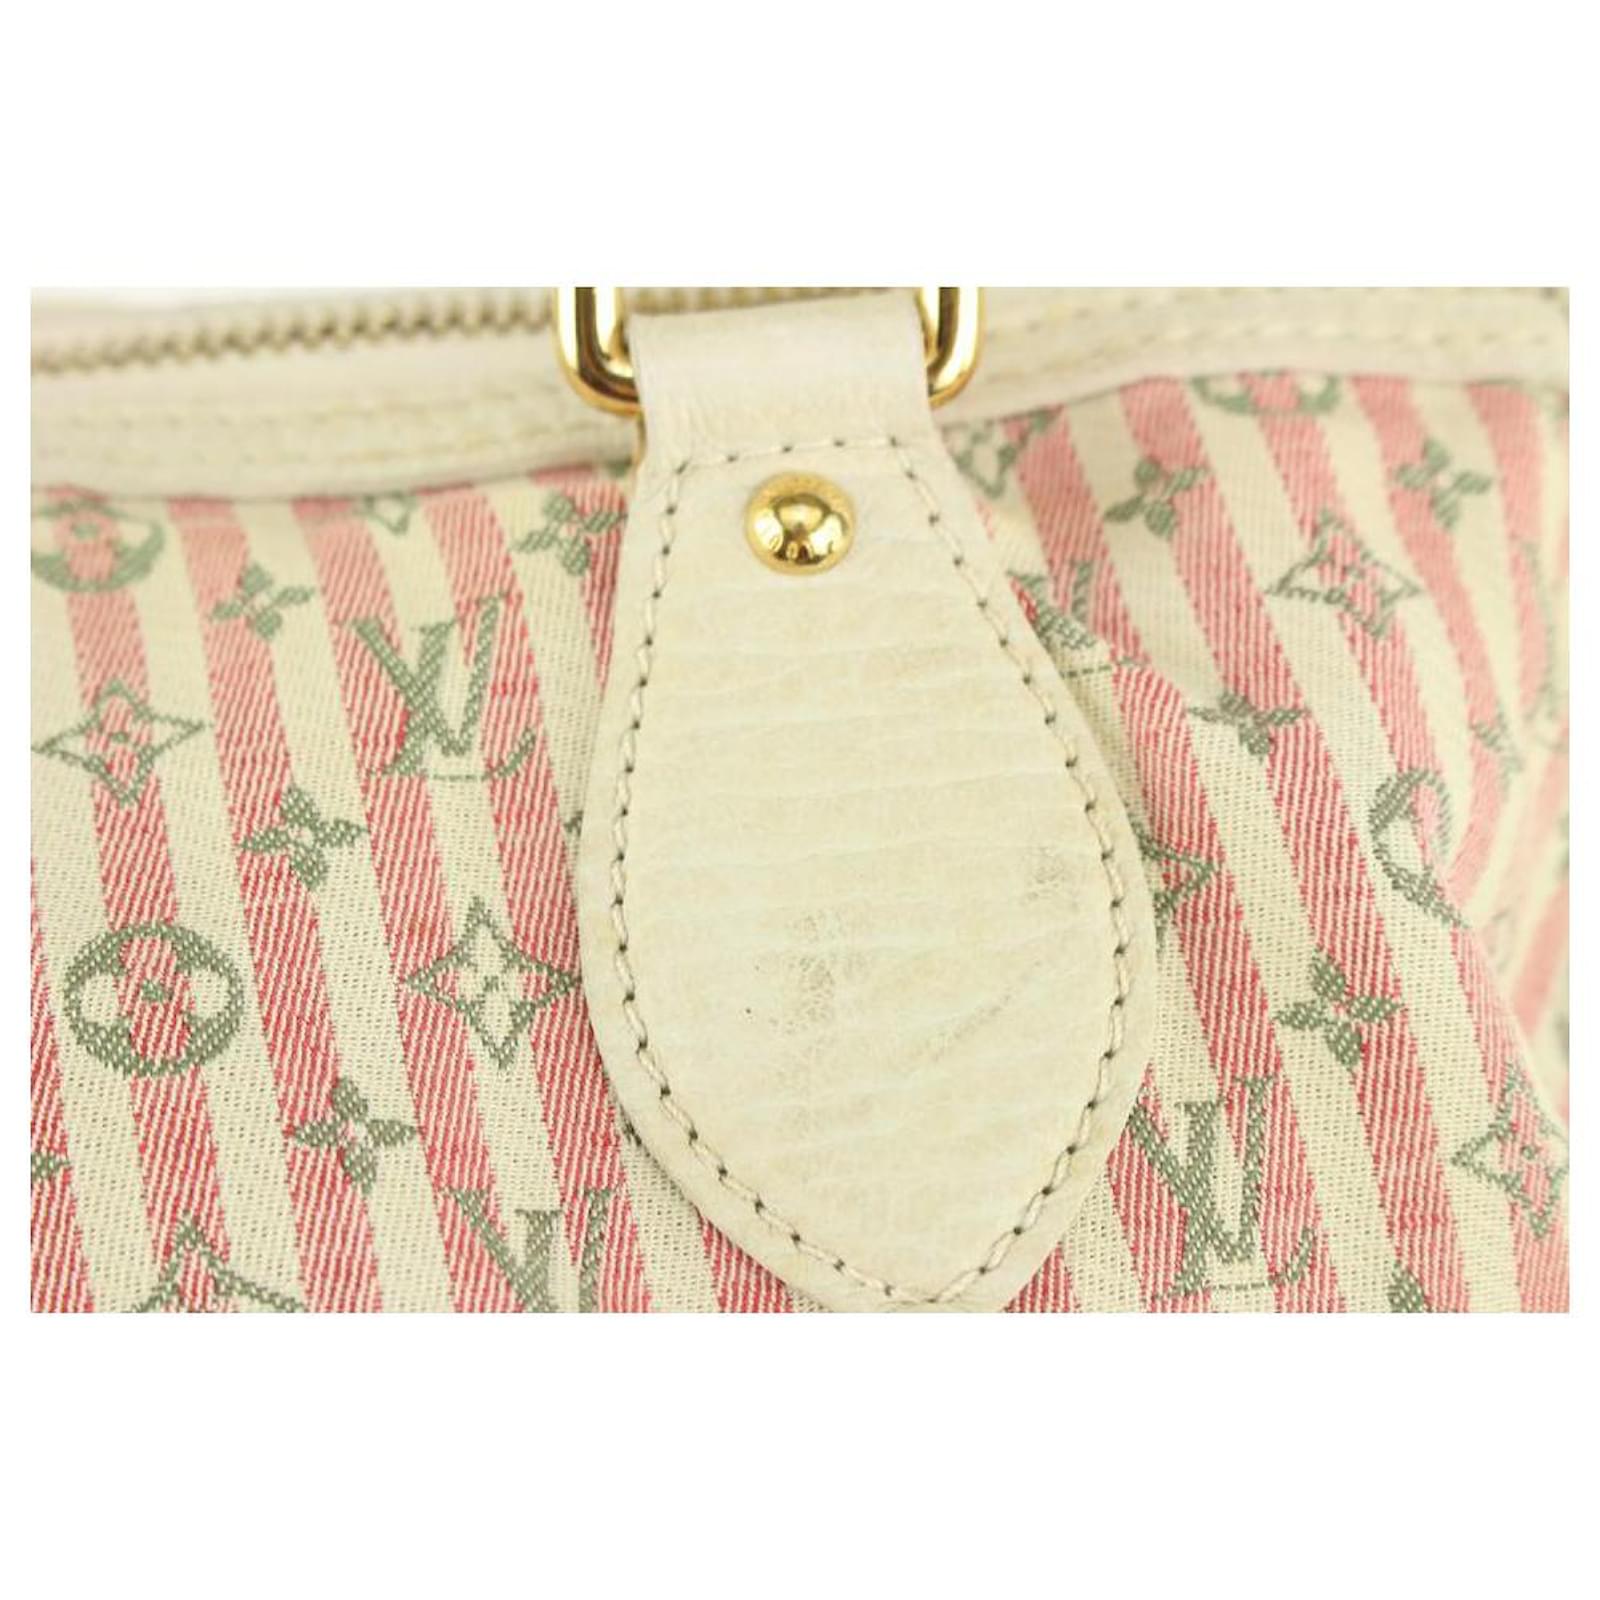 Auth Louis Vuitton Marina GM PINK Monogram Croisette Satchel Bag